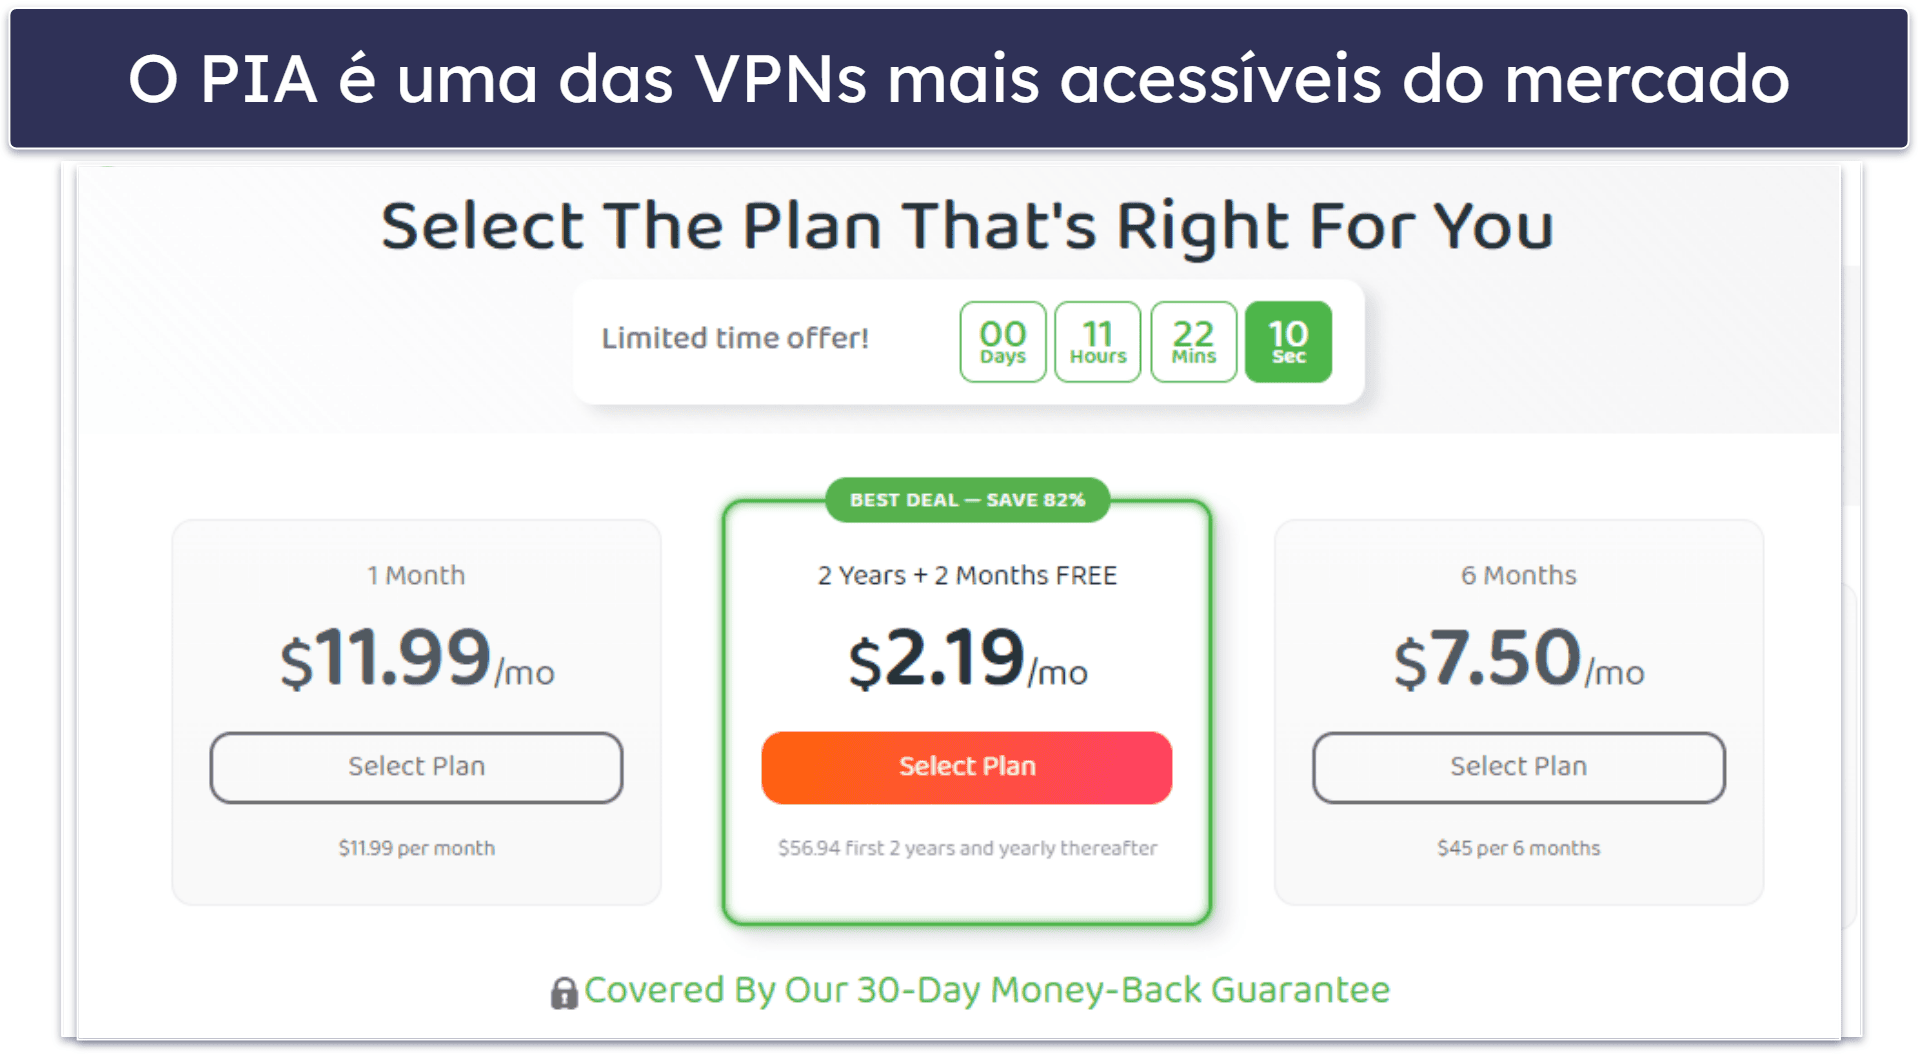 🥈2. Private Internet Access (PIA) — Ótimo plano mensal para navegação e torrent